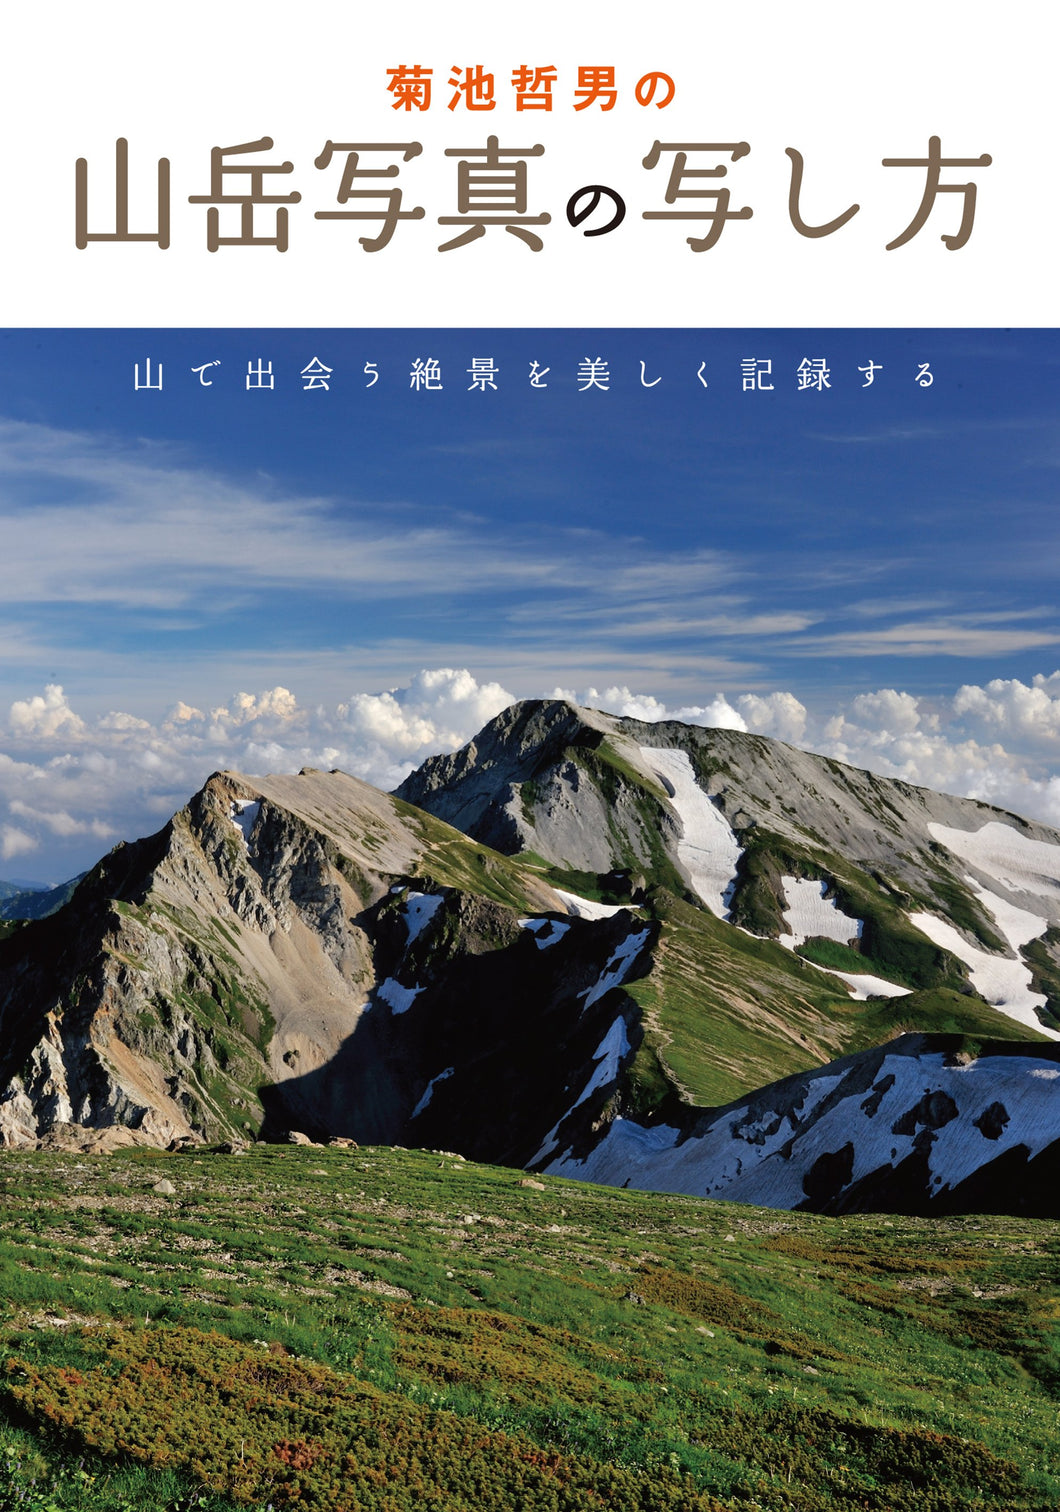 菊池哲男の山岳写真の写し方